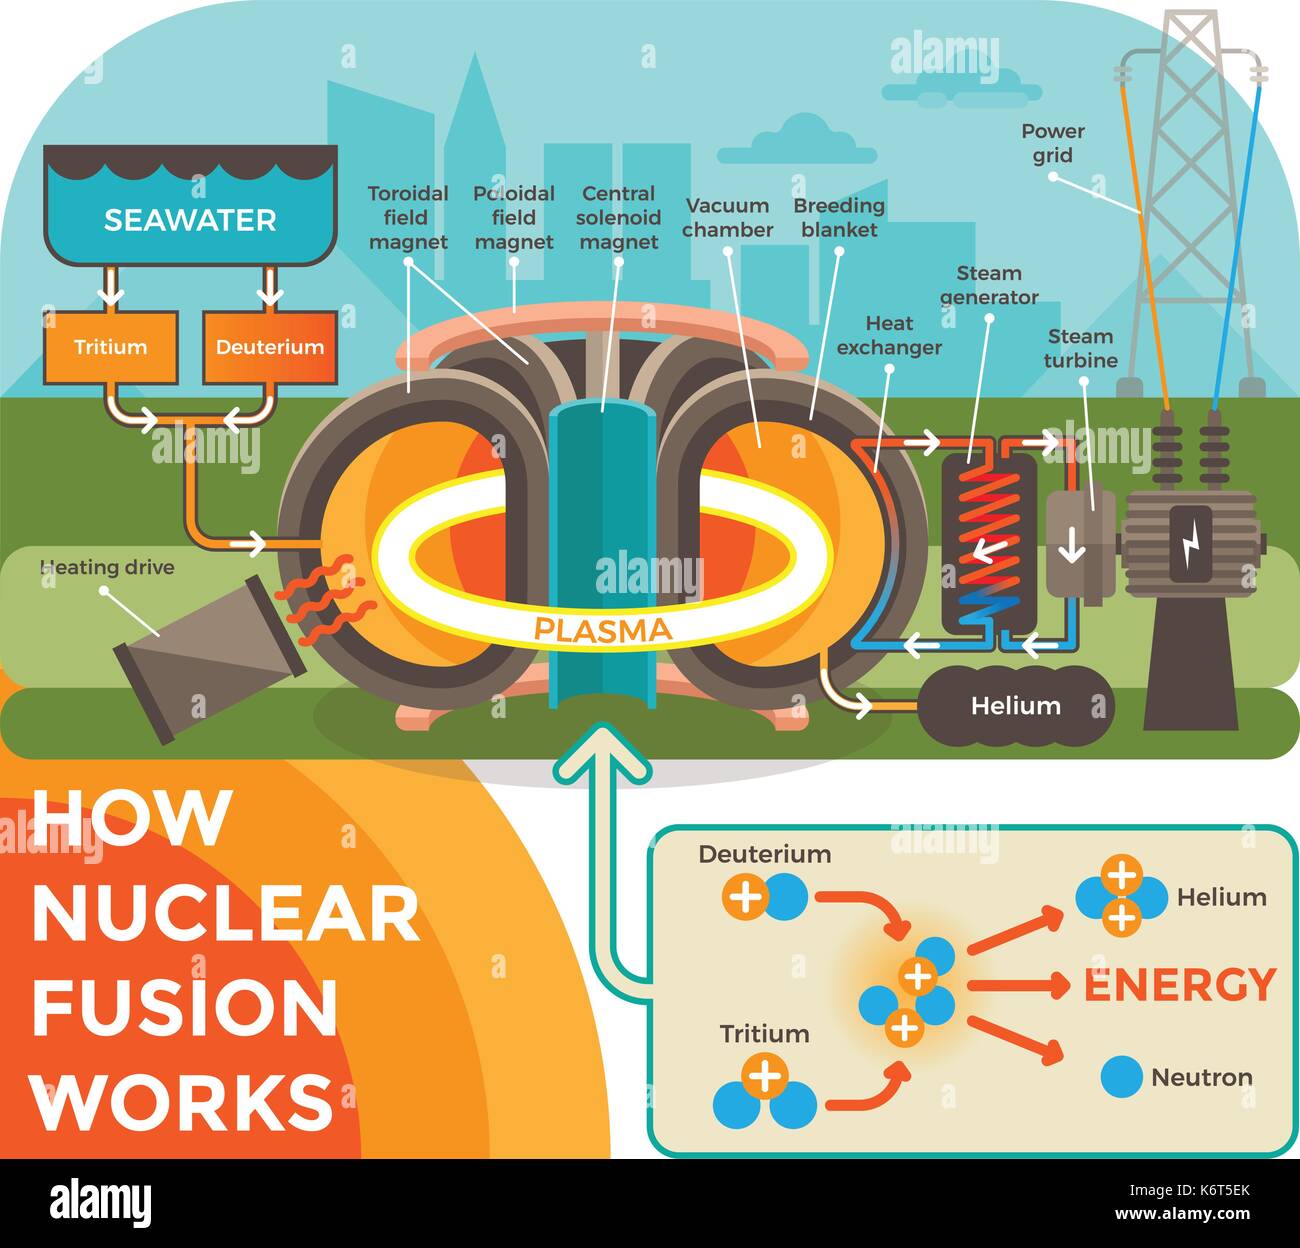 Cómo funciona la fusión caliente. ilustración con un fondo que muestra el proceso de fusión nuclear en forma esquemática mediante ilustraciones estilo apartamento moderno. Ilustración del Vector